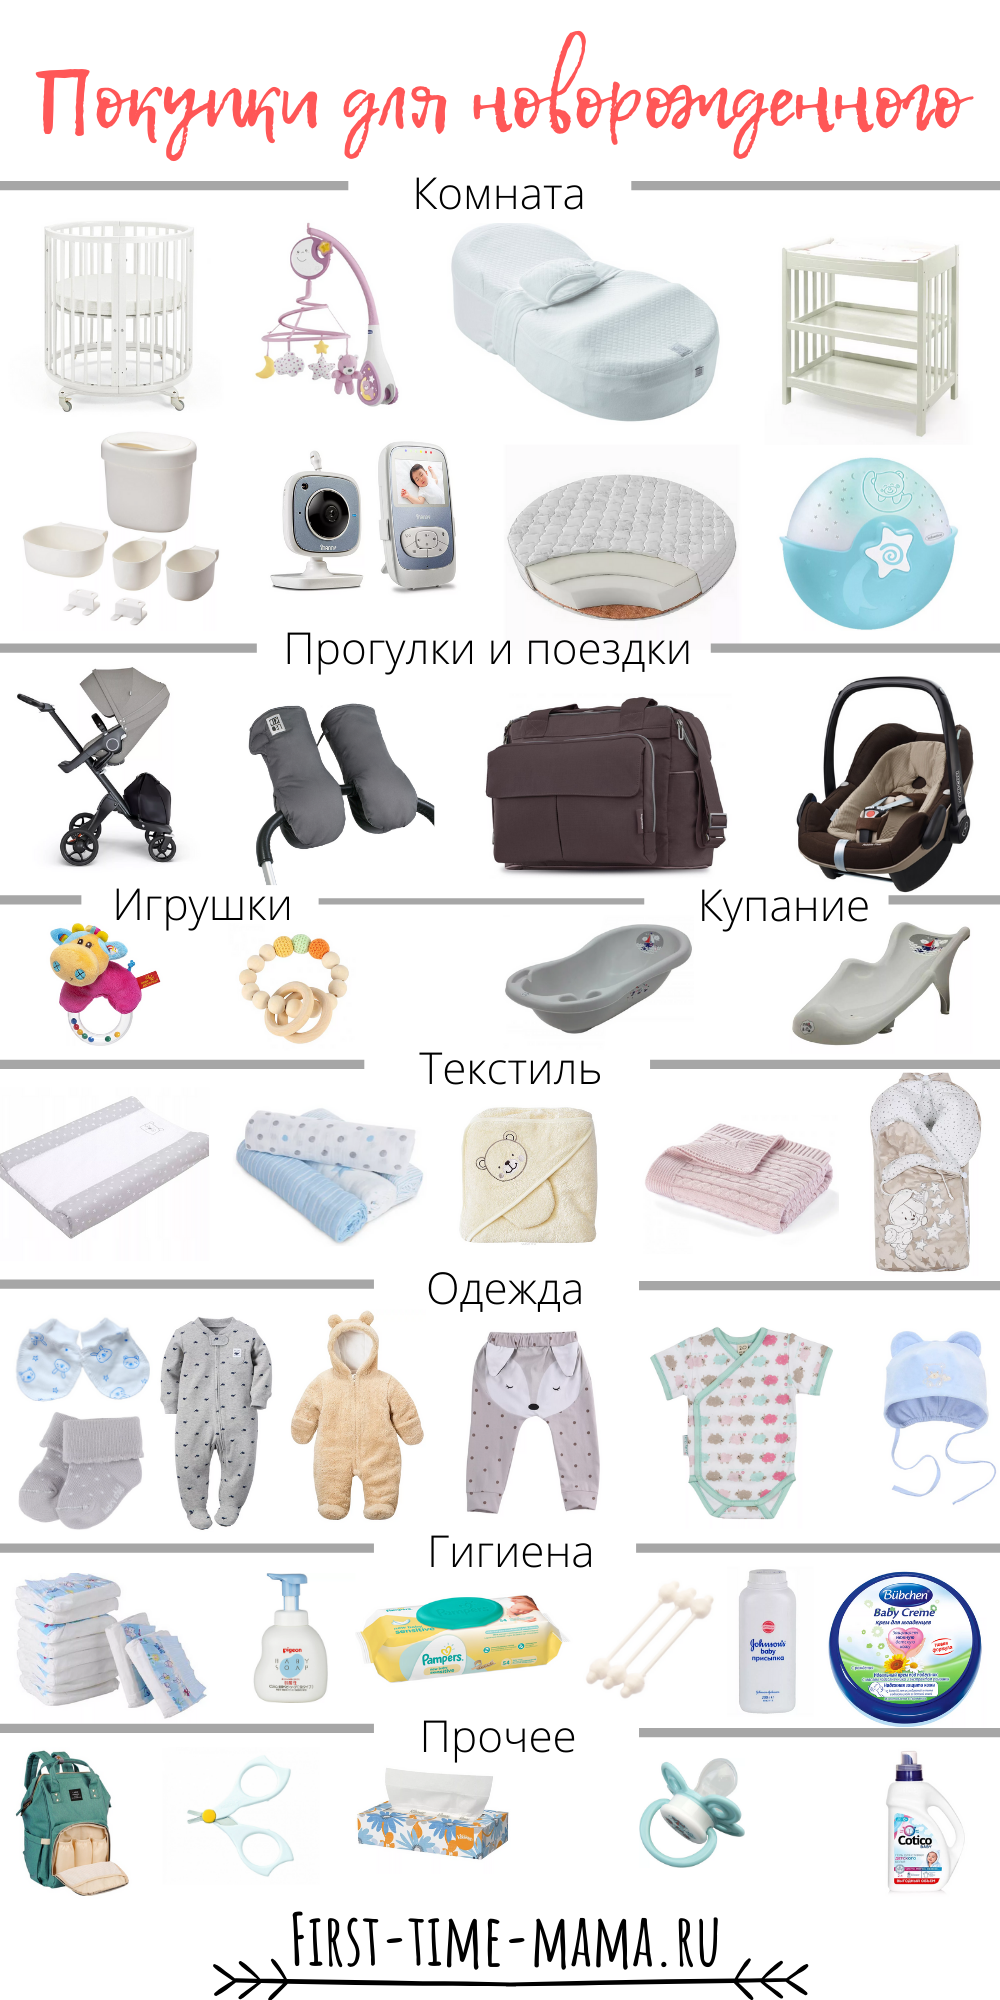 Первые покупки для новорожденного. Вещи первой необходимости для новорожденного после роддома. Одежда для новорожденного список необходимого. Список вещей для новорожденного. Список однждыдля новорожденного.